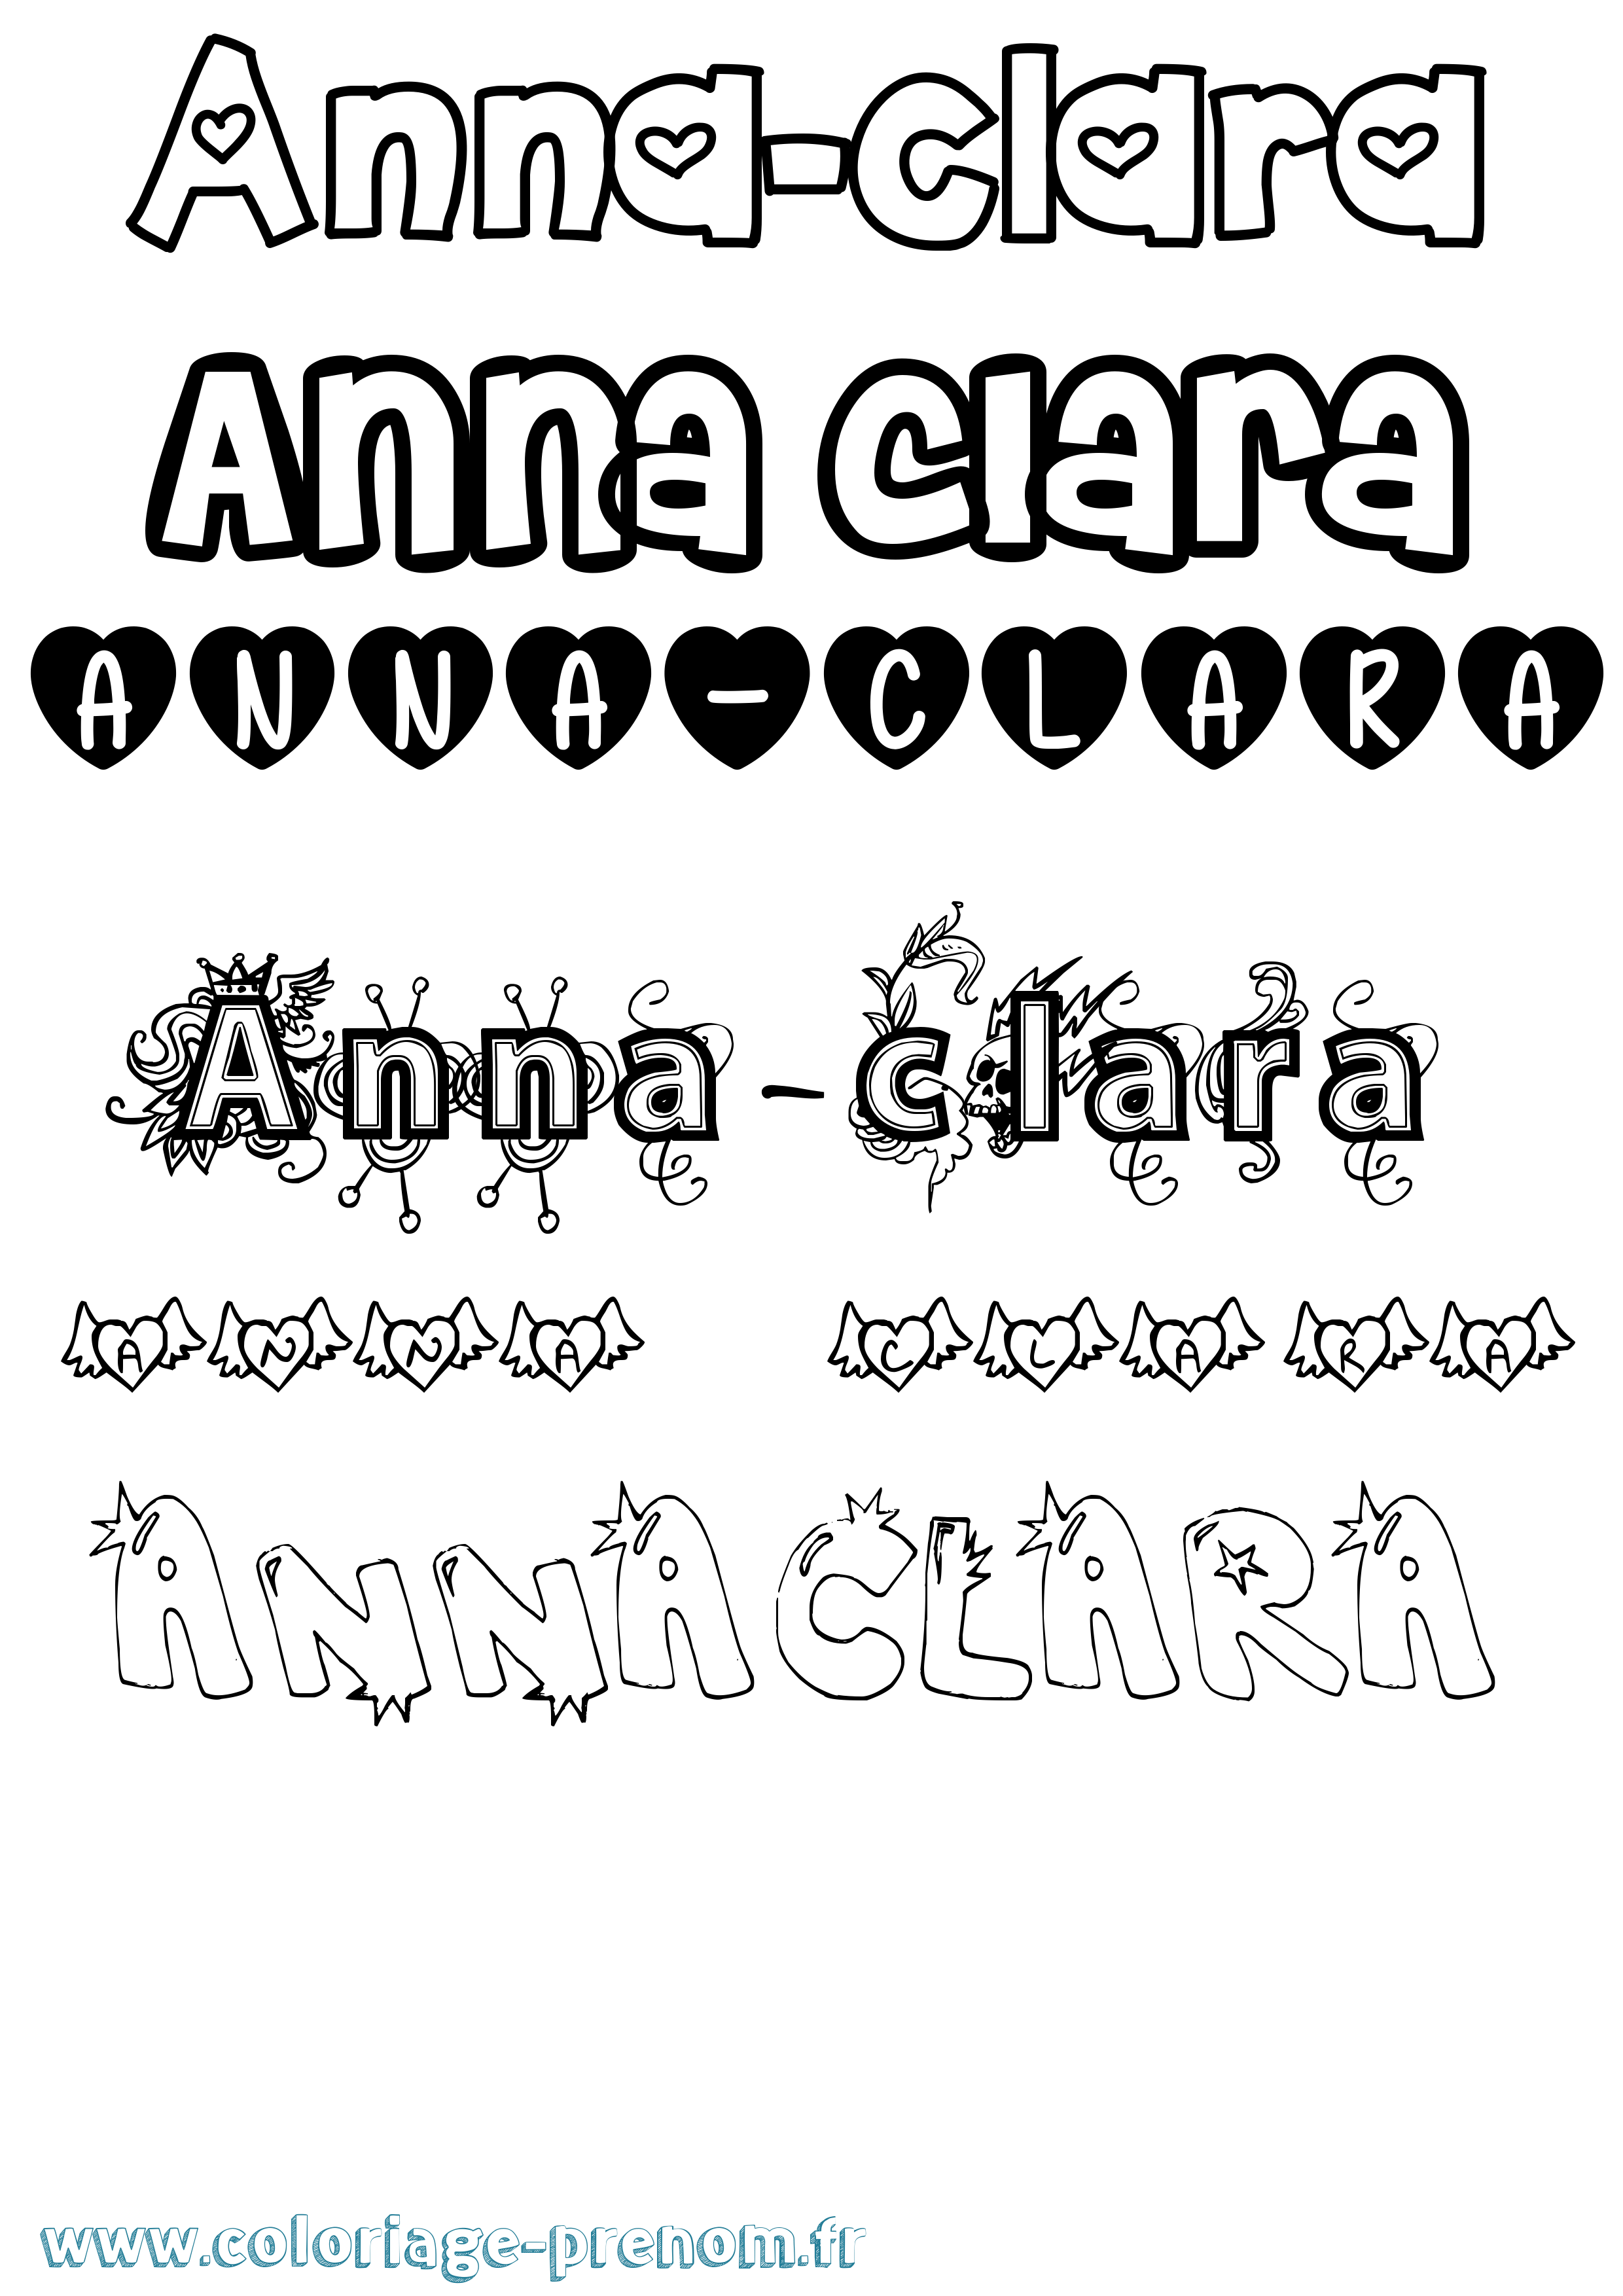 Coloriage prénom Anna-Clara Girly